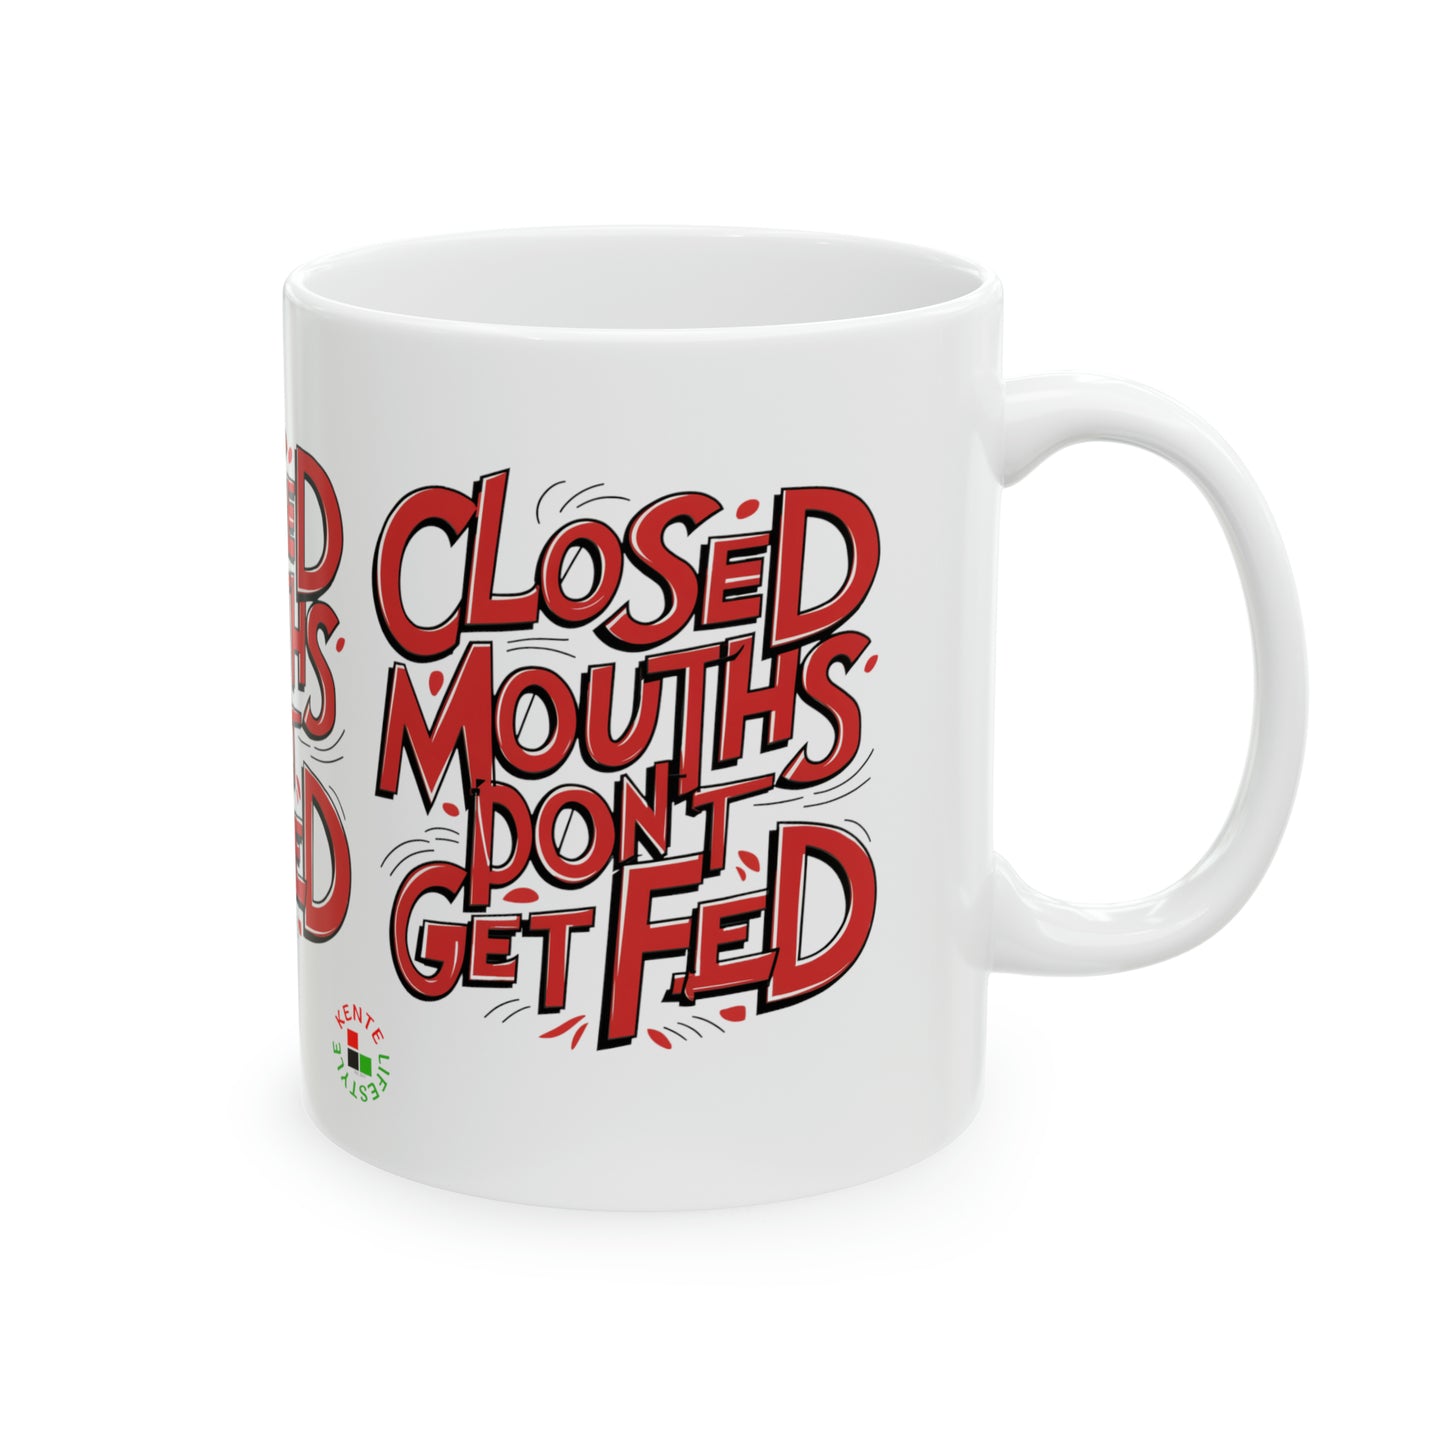 "Closed Mouths Don't Get Fed" - Ceramic Mug 11oz